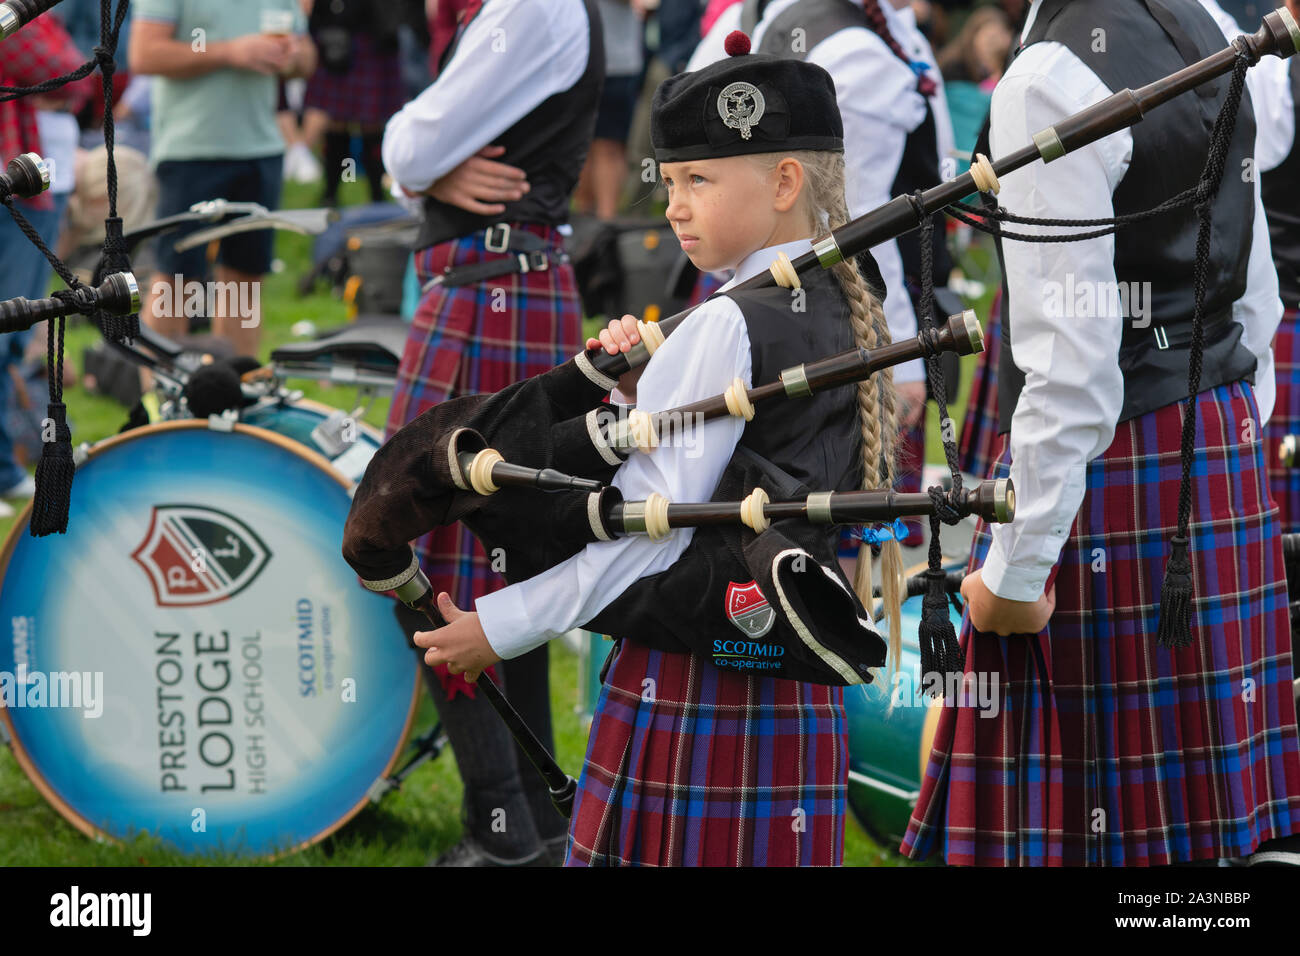 Jeune fille dans le Preston Lodge High School Pipe Band holding cornemuse à Peebles Highland Games. Peebles, Scottish Borders, Scotland Banque D'Images